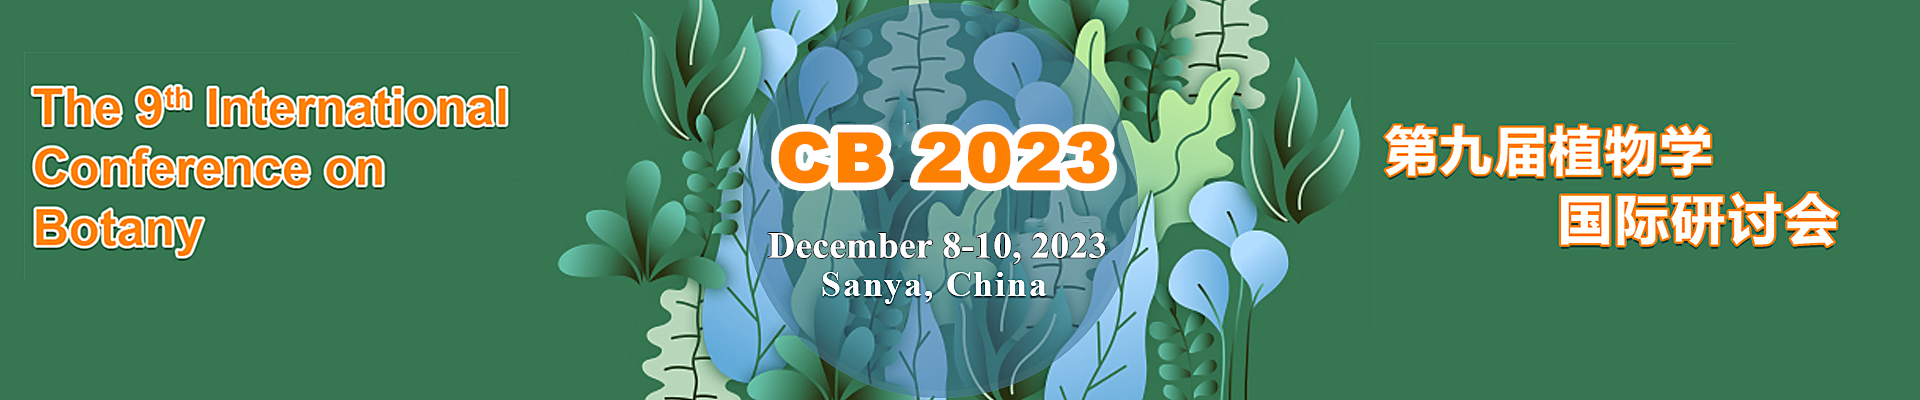 The 9th International Conference on Botany (CB 2023), Sanya, China,Hainan,China